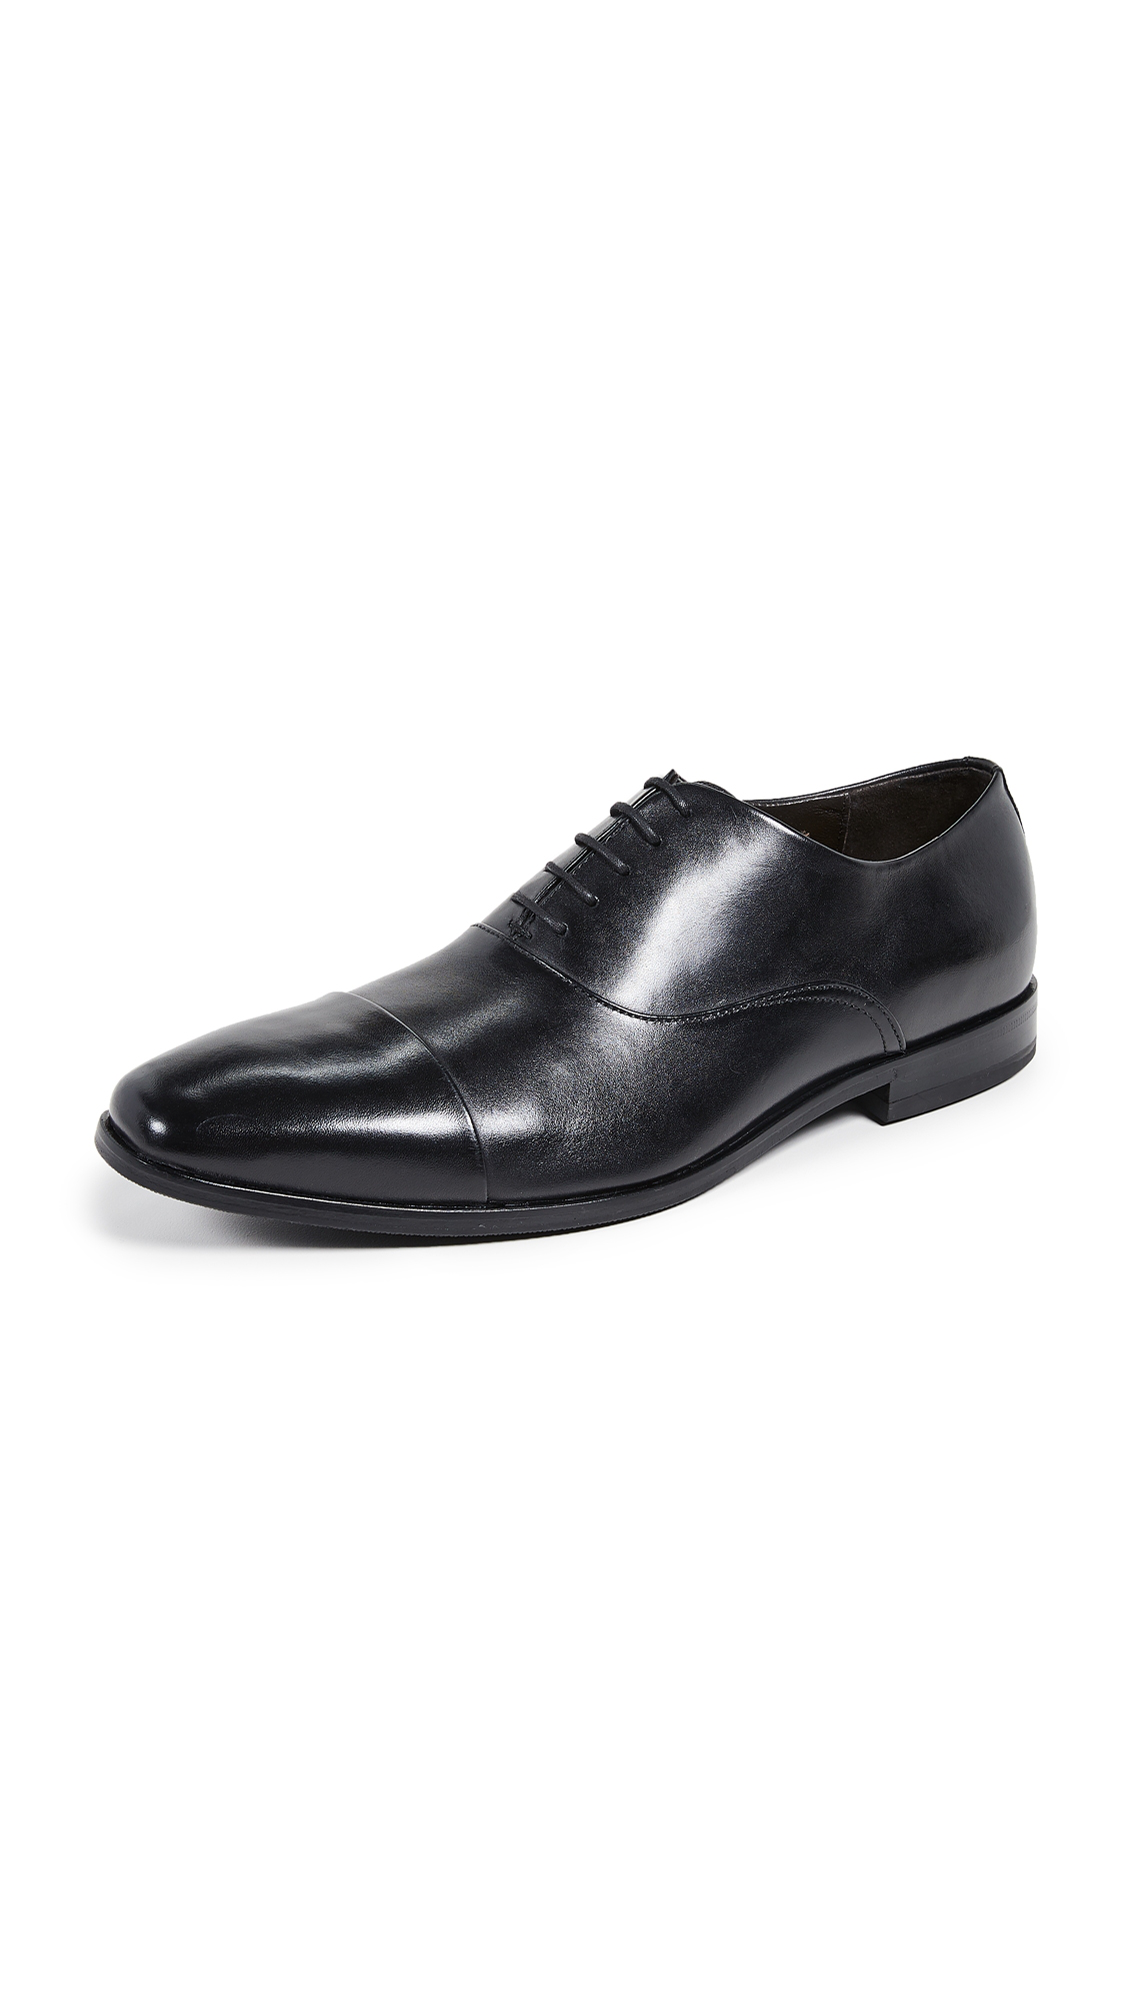 hugo boss formal shoes